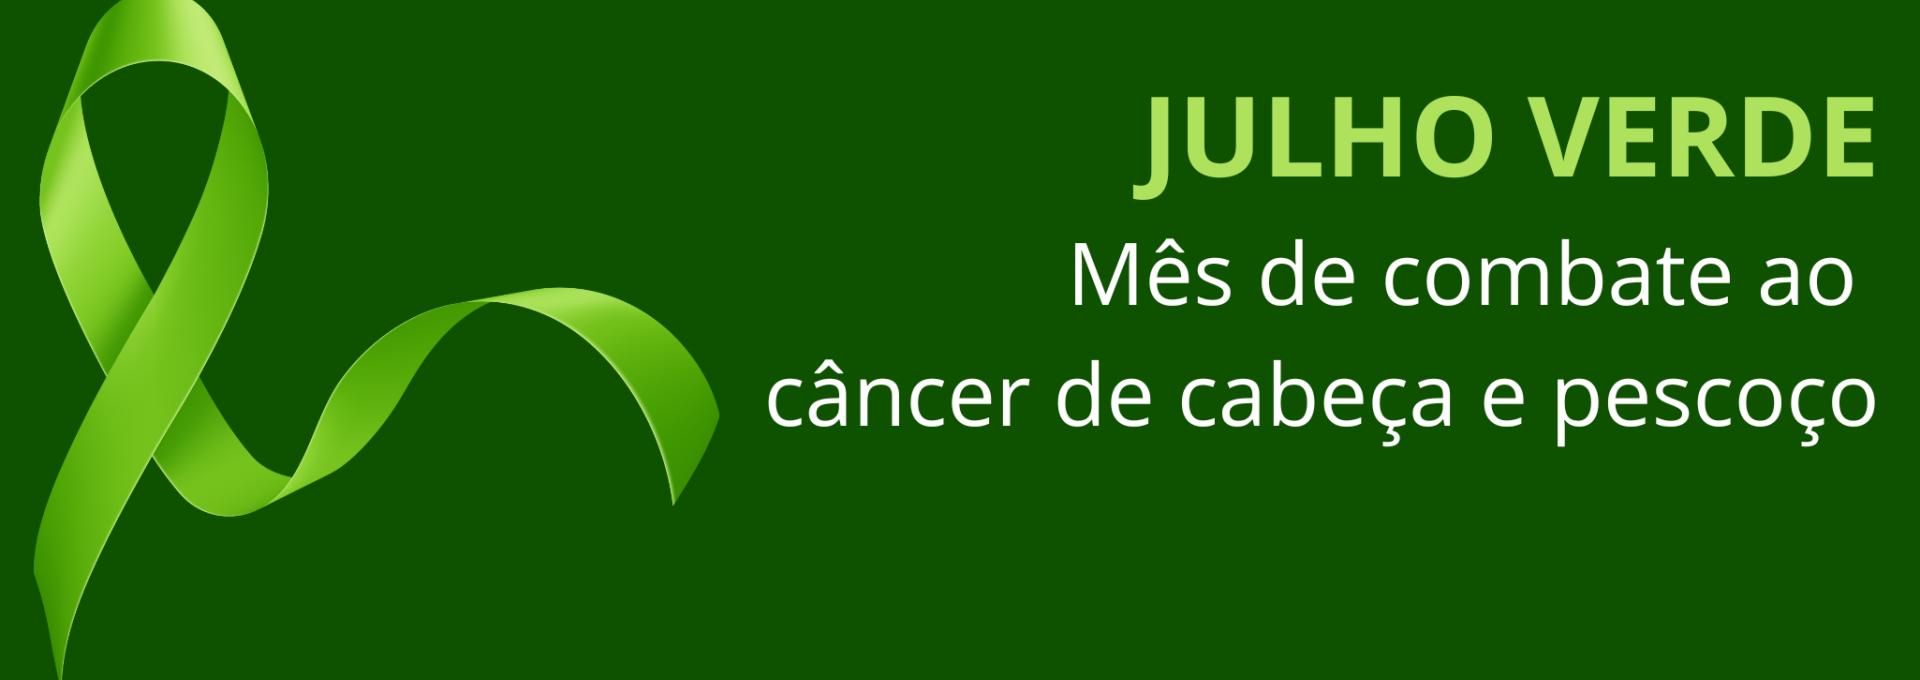 Julho Verde é o mês de combate ao câncer de cabeça e pescoço